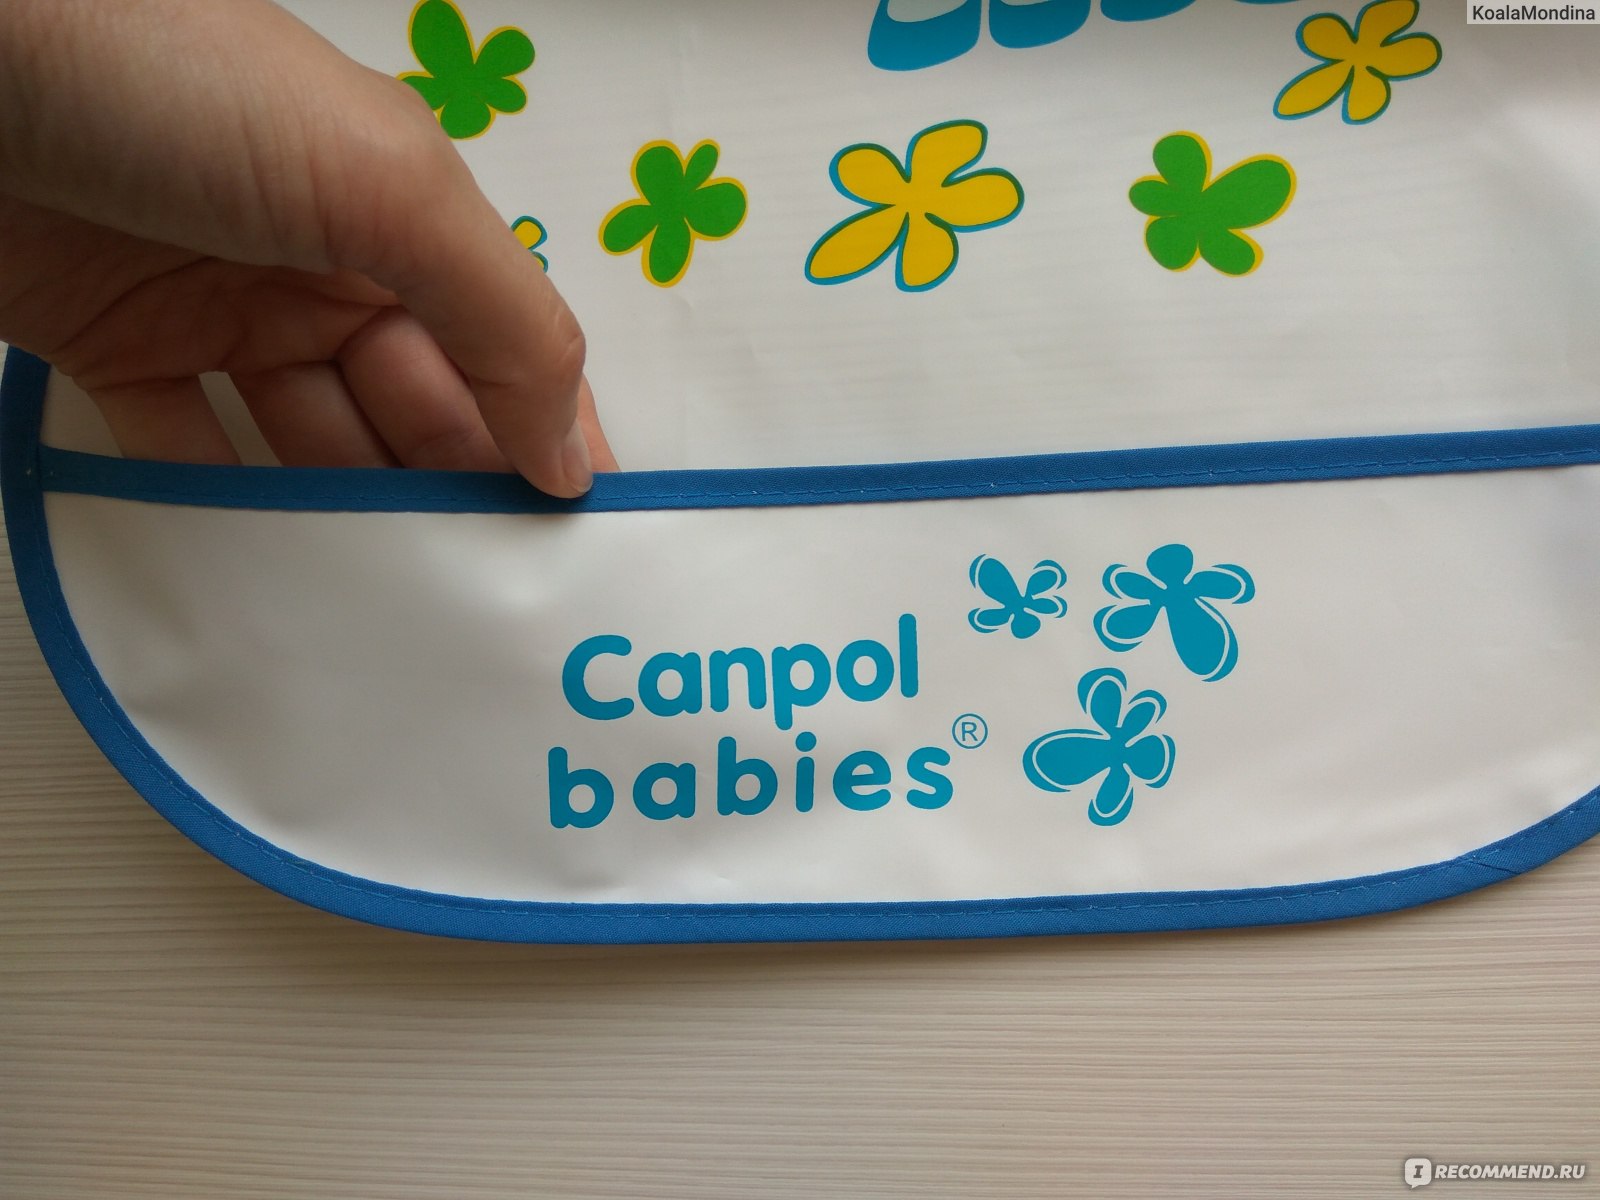 Canpol babies клеенка на кровать